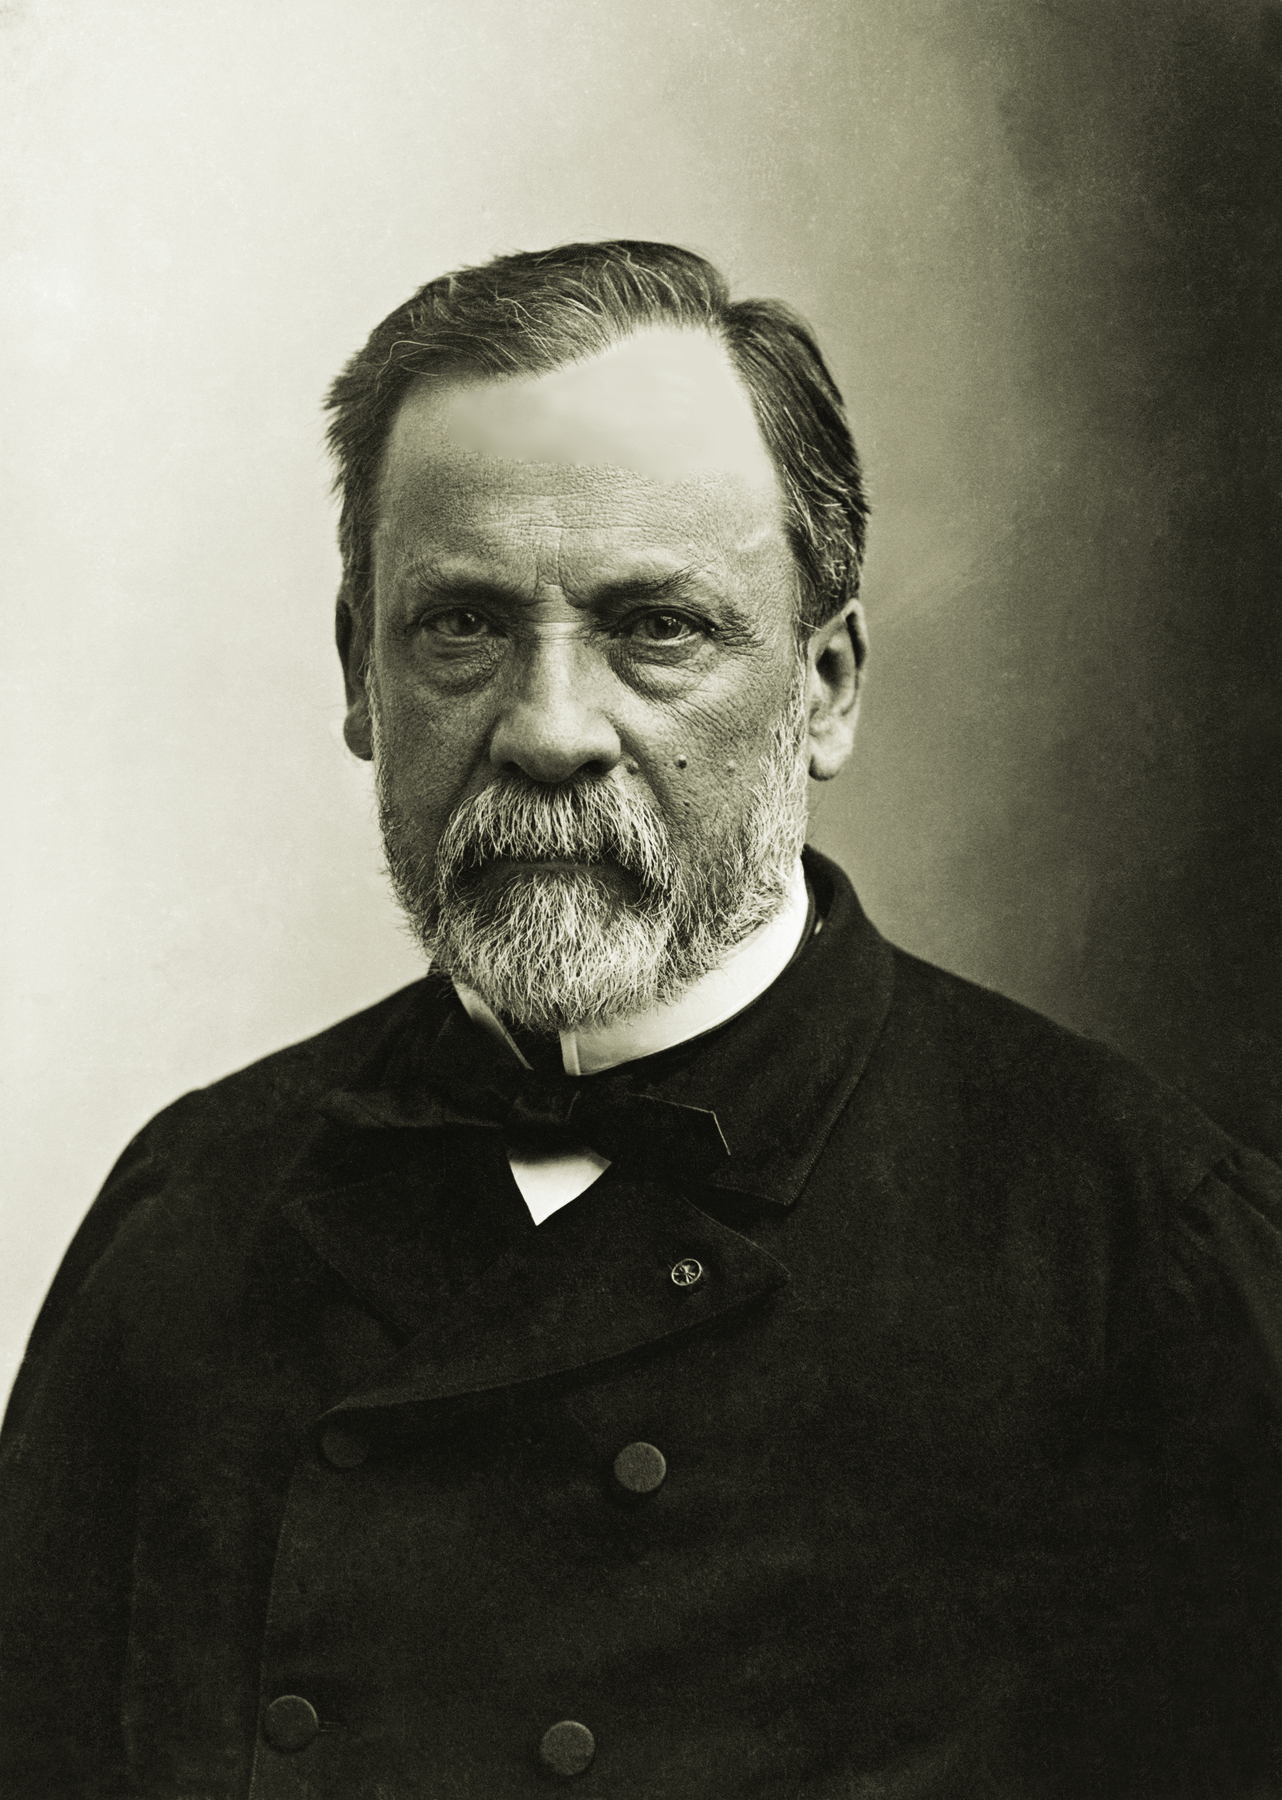 Fotografia em preto e branco. Homem com a descrição na foto sendo Louis Pasteur que viveu entre 1 mil 822 e 1 mil 895, de cabelo escuro com barba grisalha, uma verruga na bochecha, está usando um casaco preto e uma gravata borboleta preta.